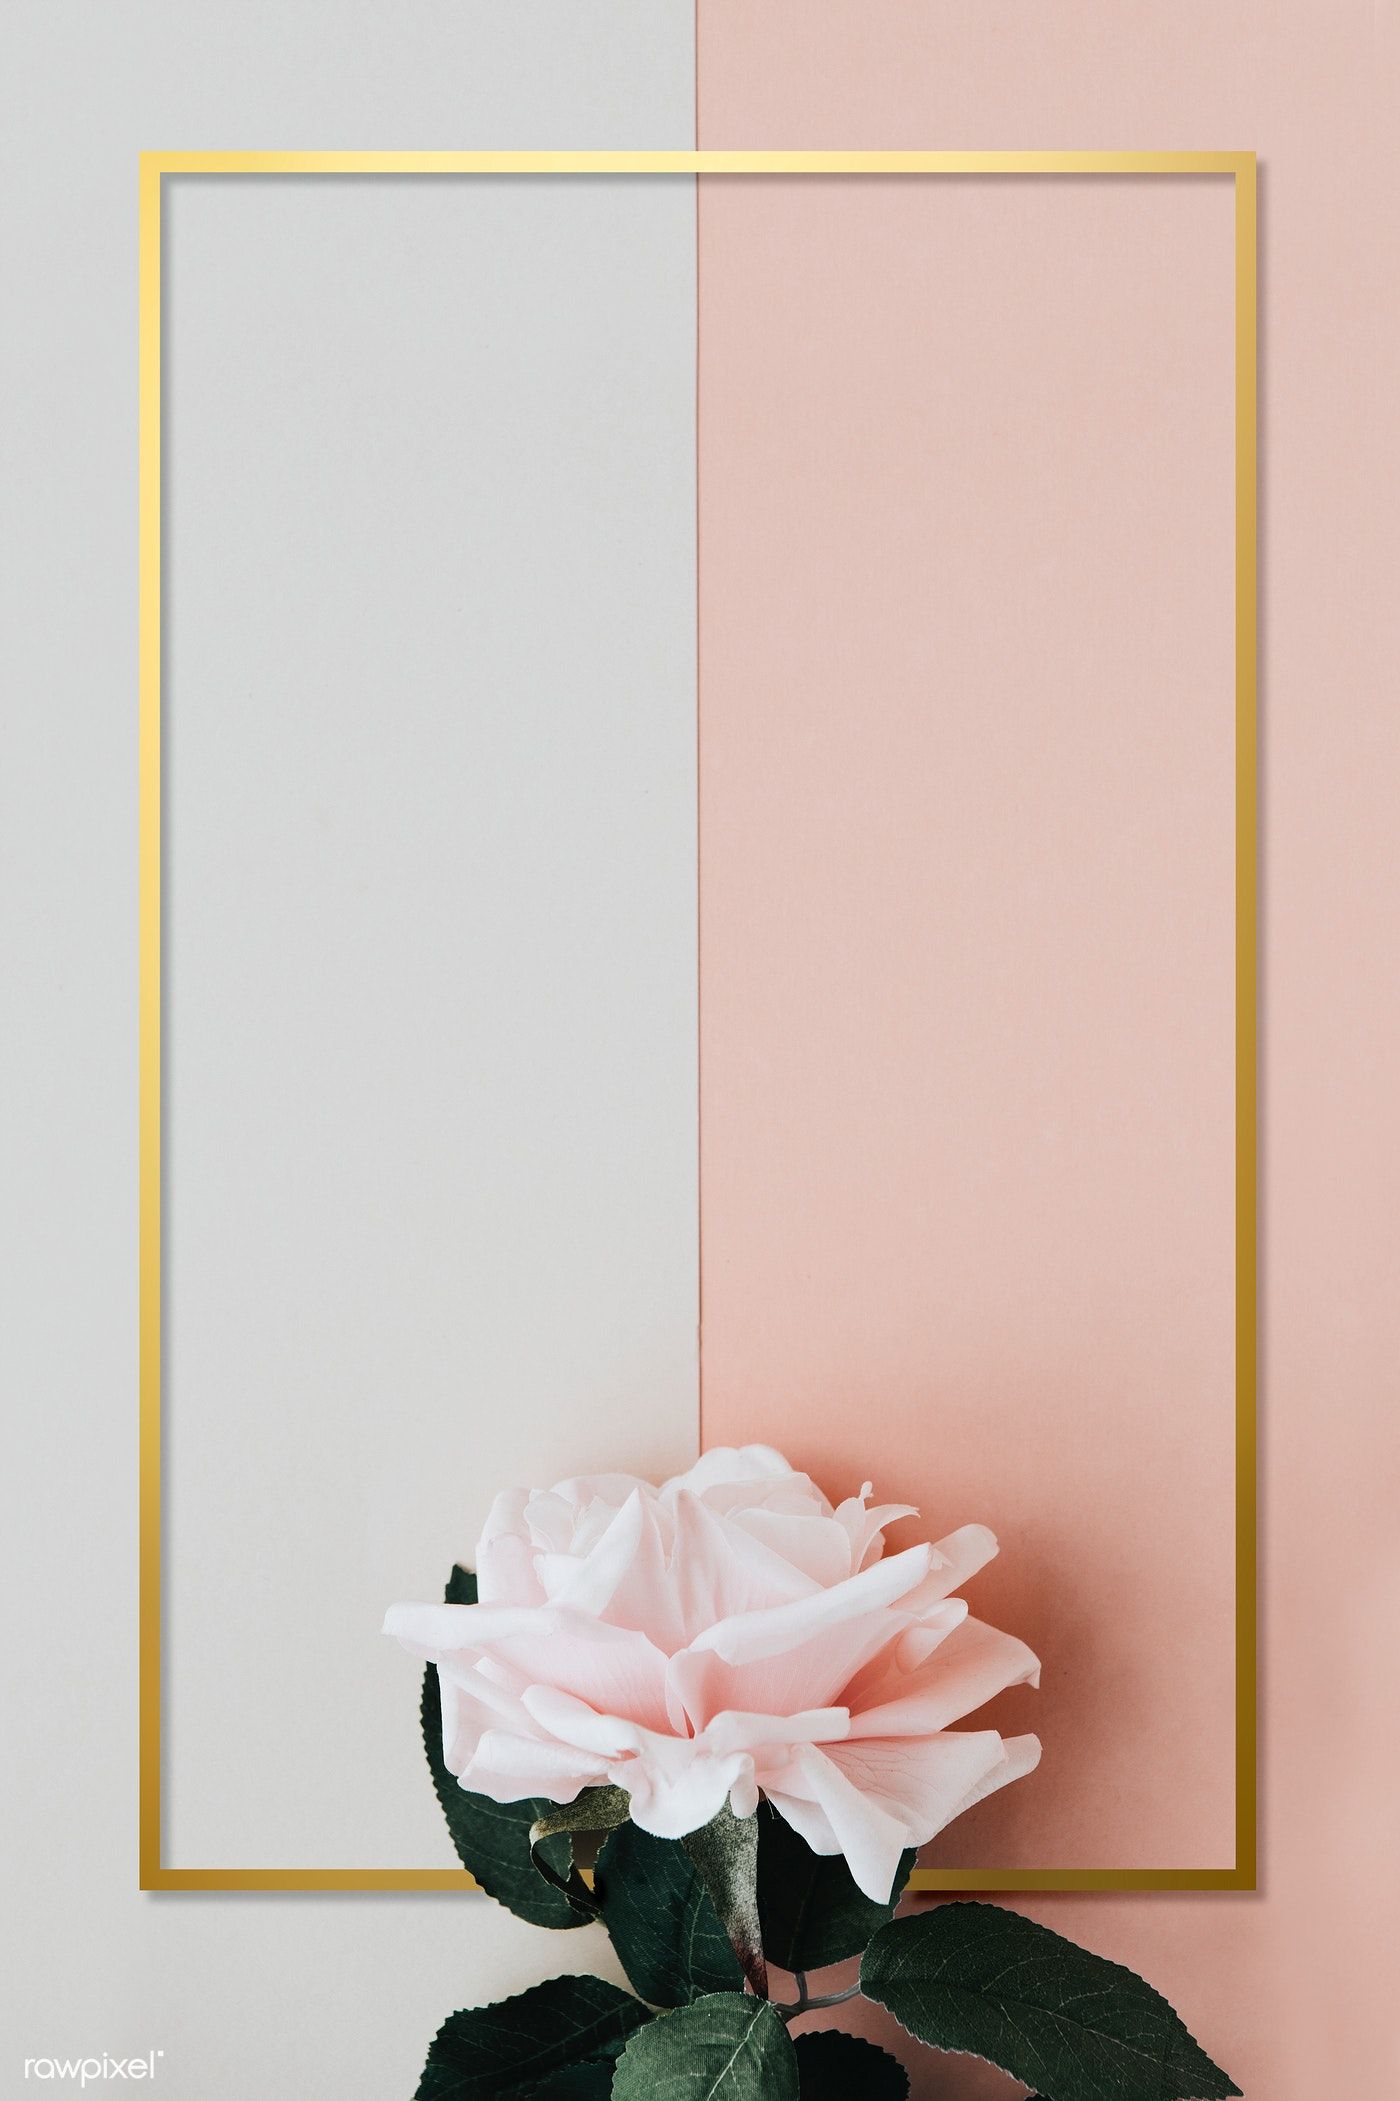 Download premium psd of Golden rectangle floral frame design 1212832. Flower graphic design, Flower background wallpaper, Floral poster